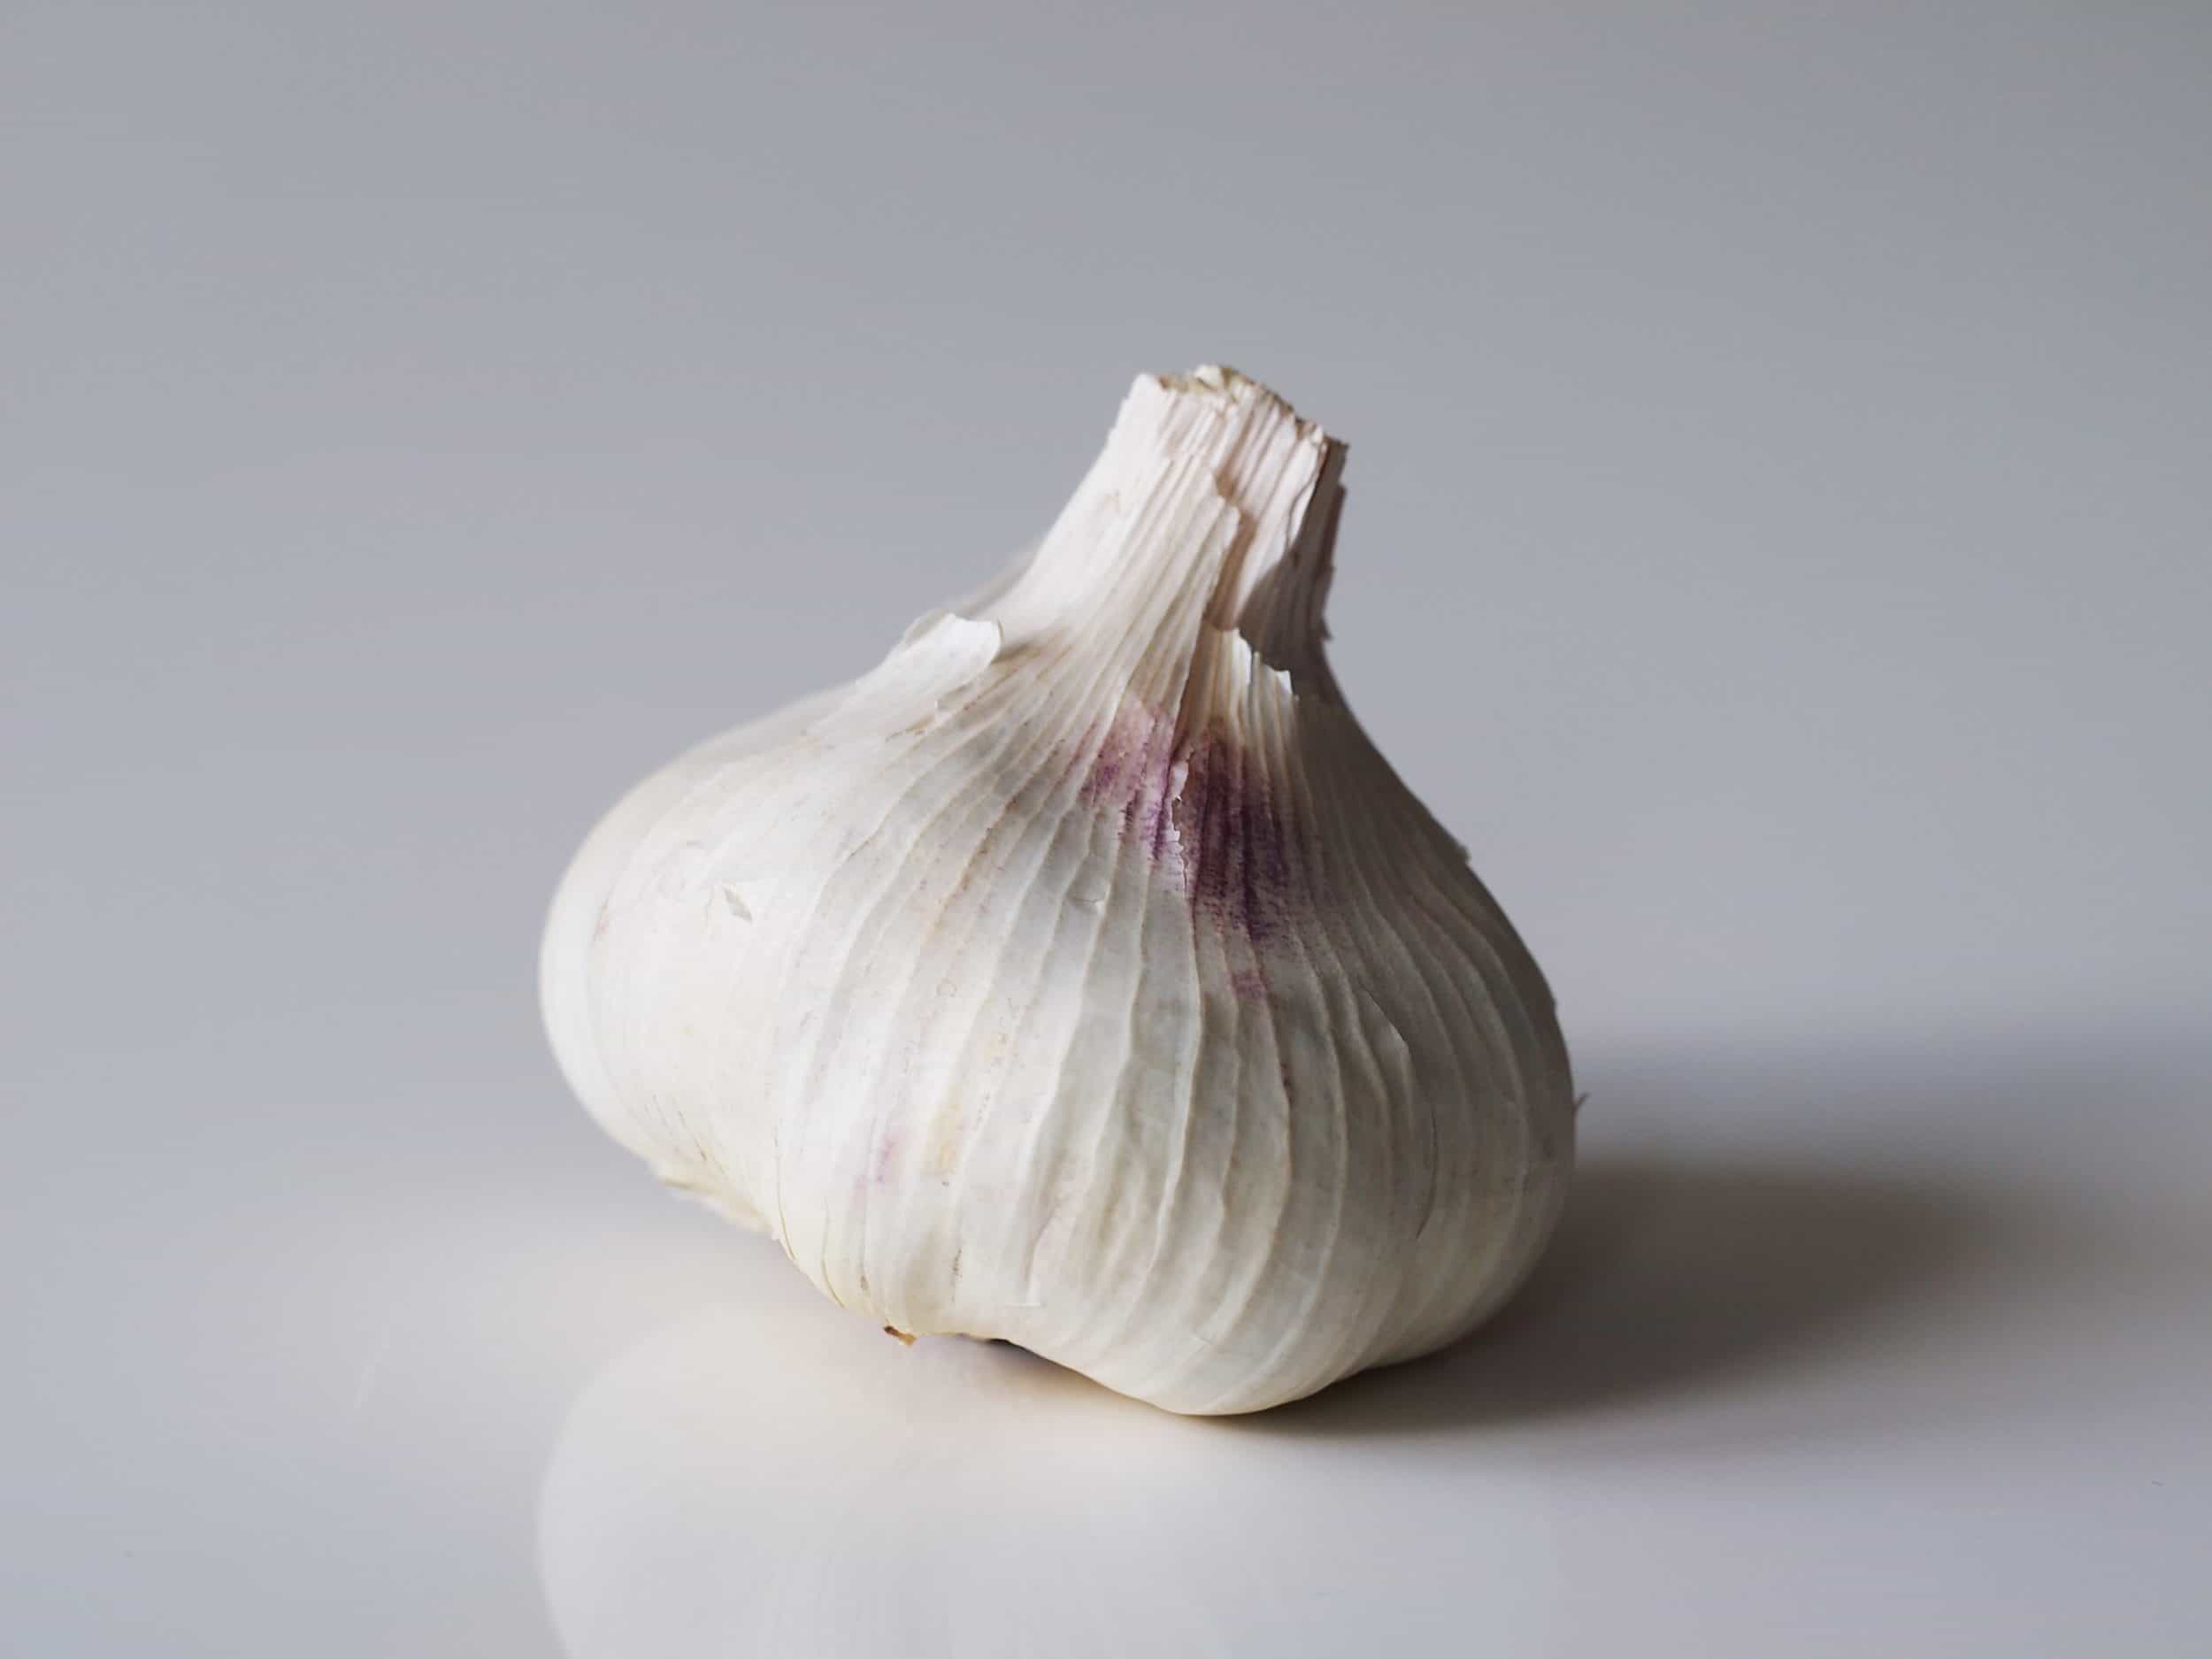 Images Of Garlic - KibrisPDR